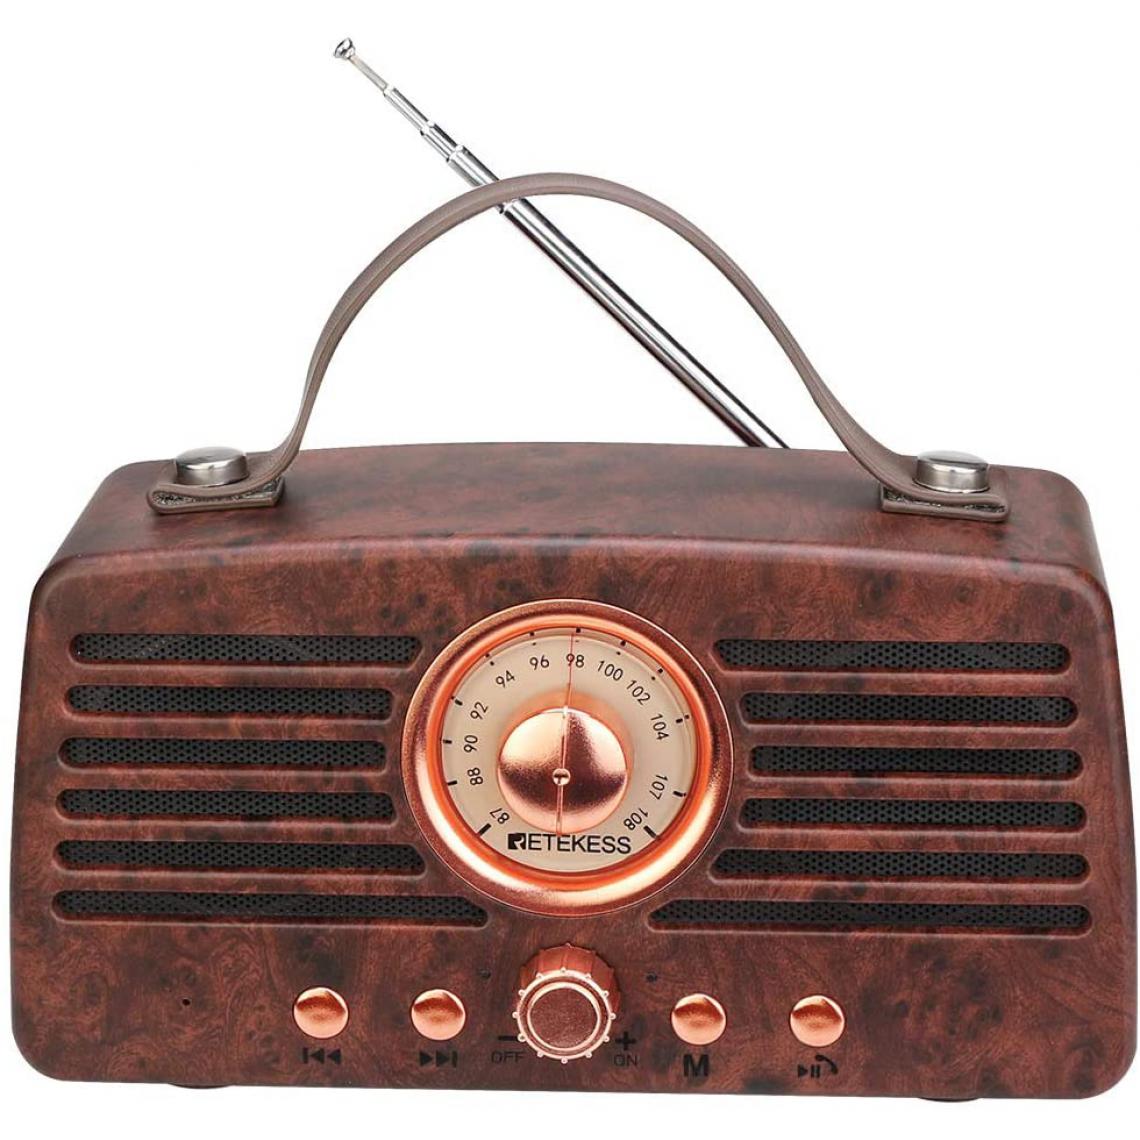 Retekess - radio vintage rétro avec bluetooth sans fil avec batterie rechargeable 1500mAh marron - Radio